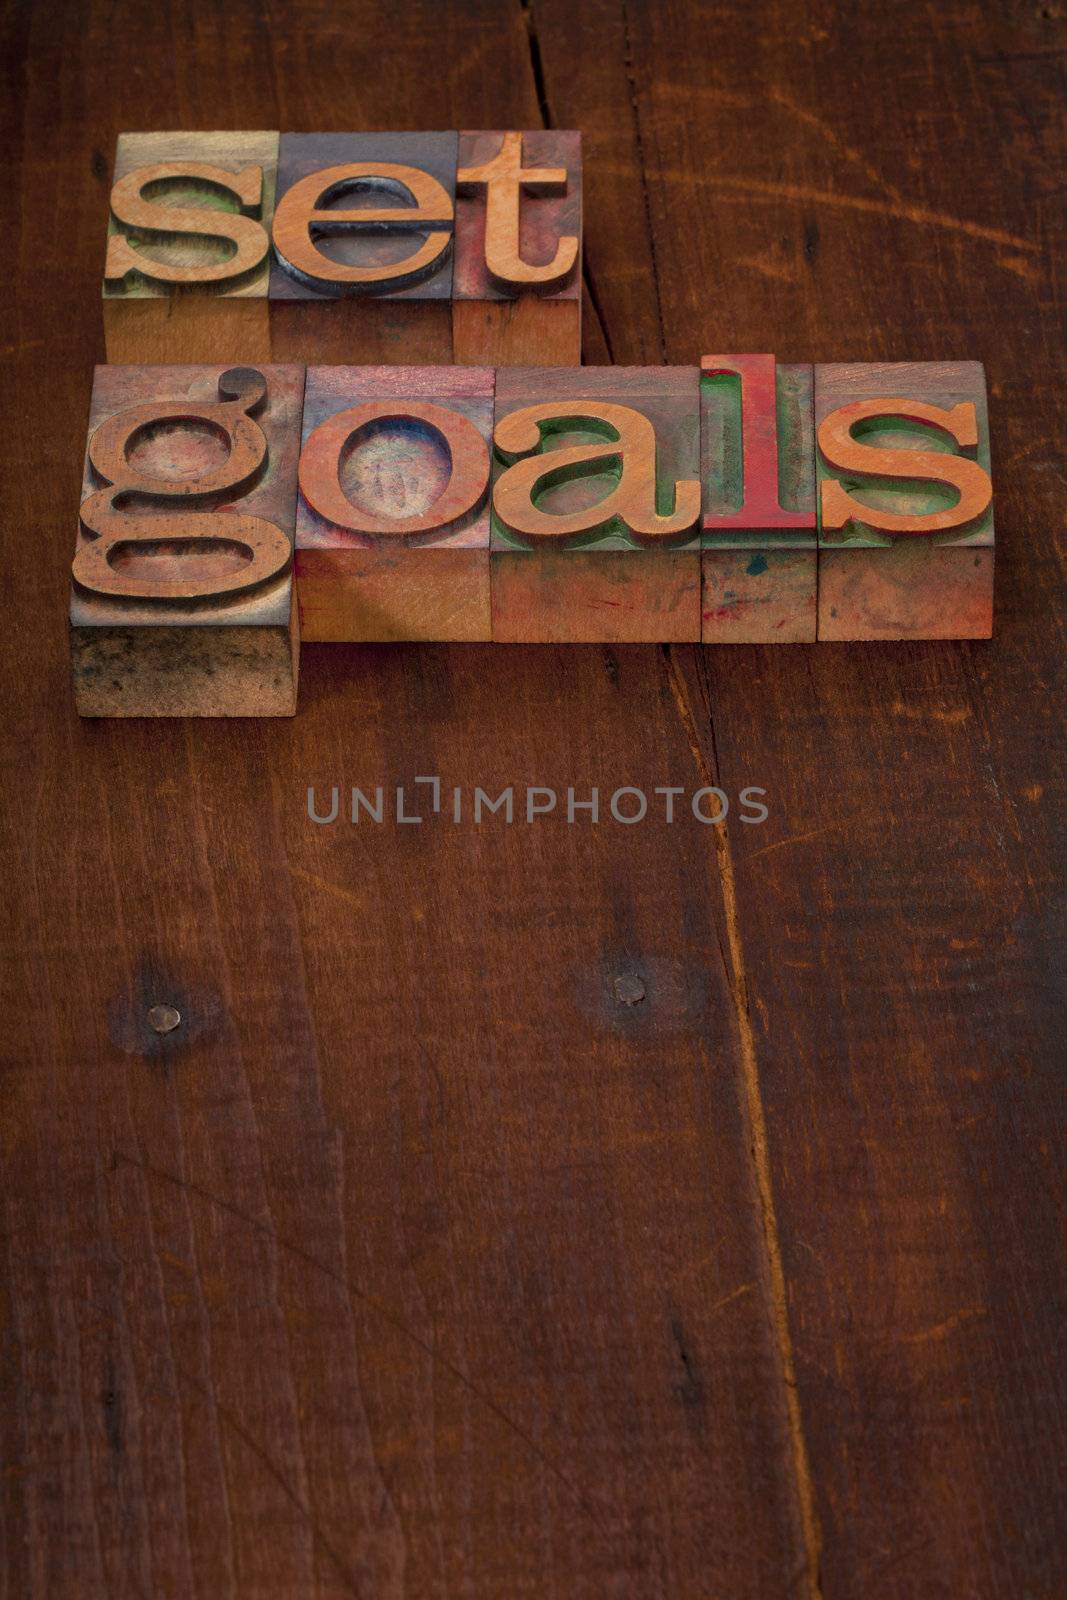 set goals - text in vintage wooden letterpress printing blocks against old grunge wooden background